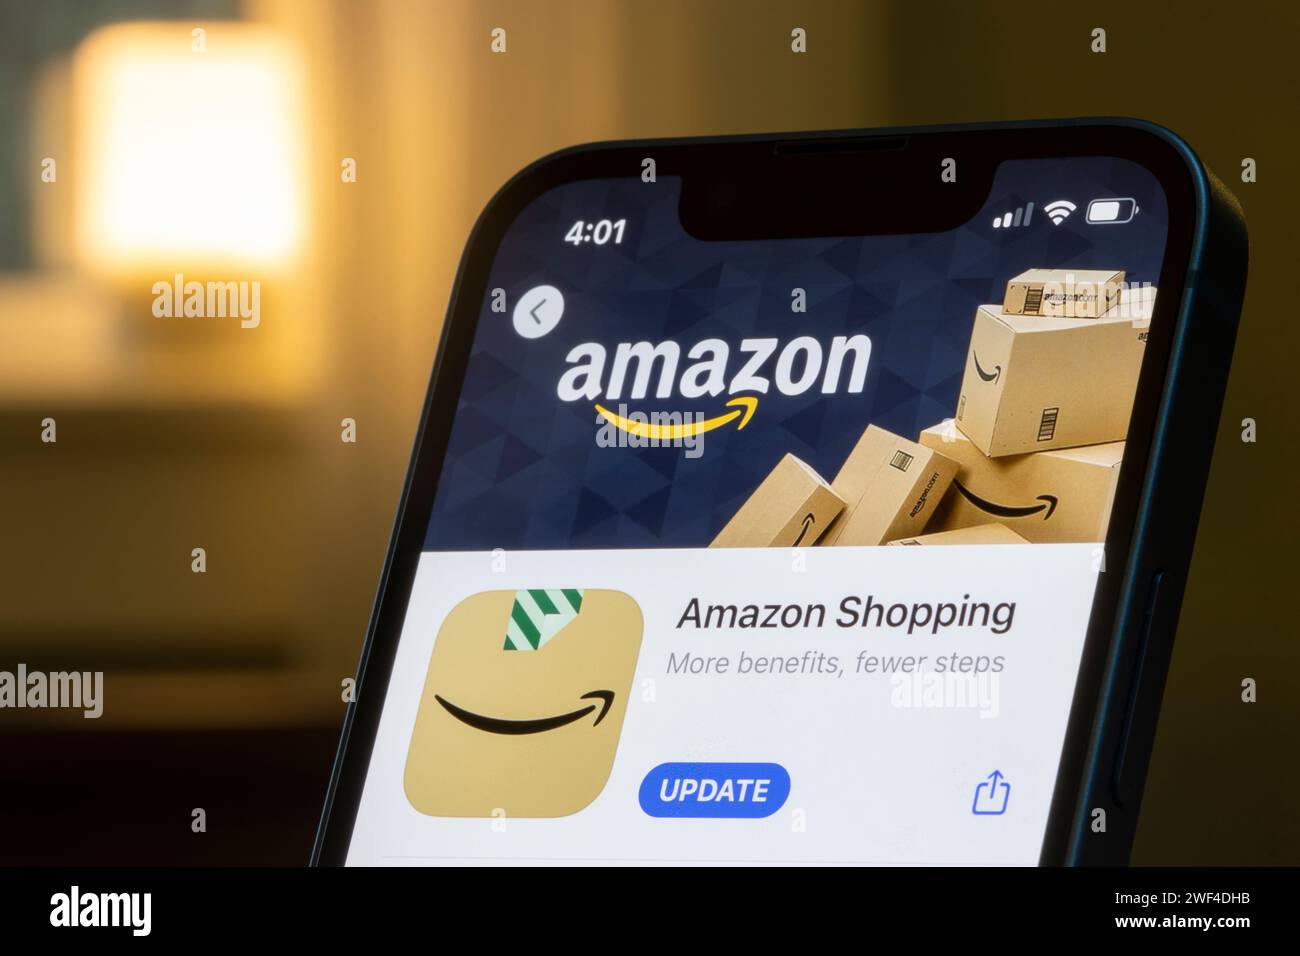 L'app Amazon Shopping è visibile nell'App Store di un iPhone. Amazon.com, Inc. È un'azienda tecnologica globale che si occupa di e-commerce, cloud computing, online ... Foto Stock